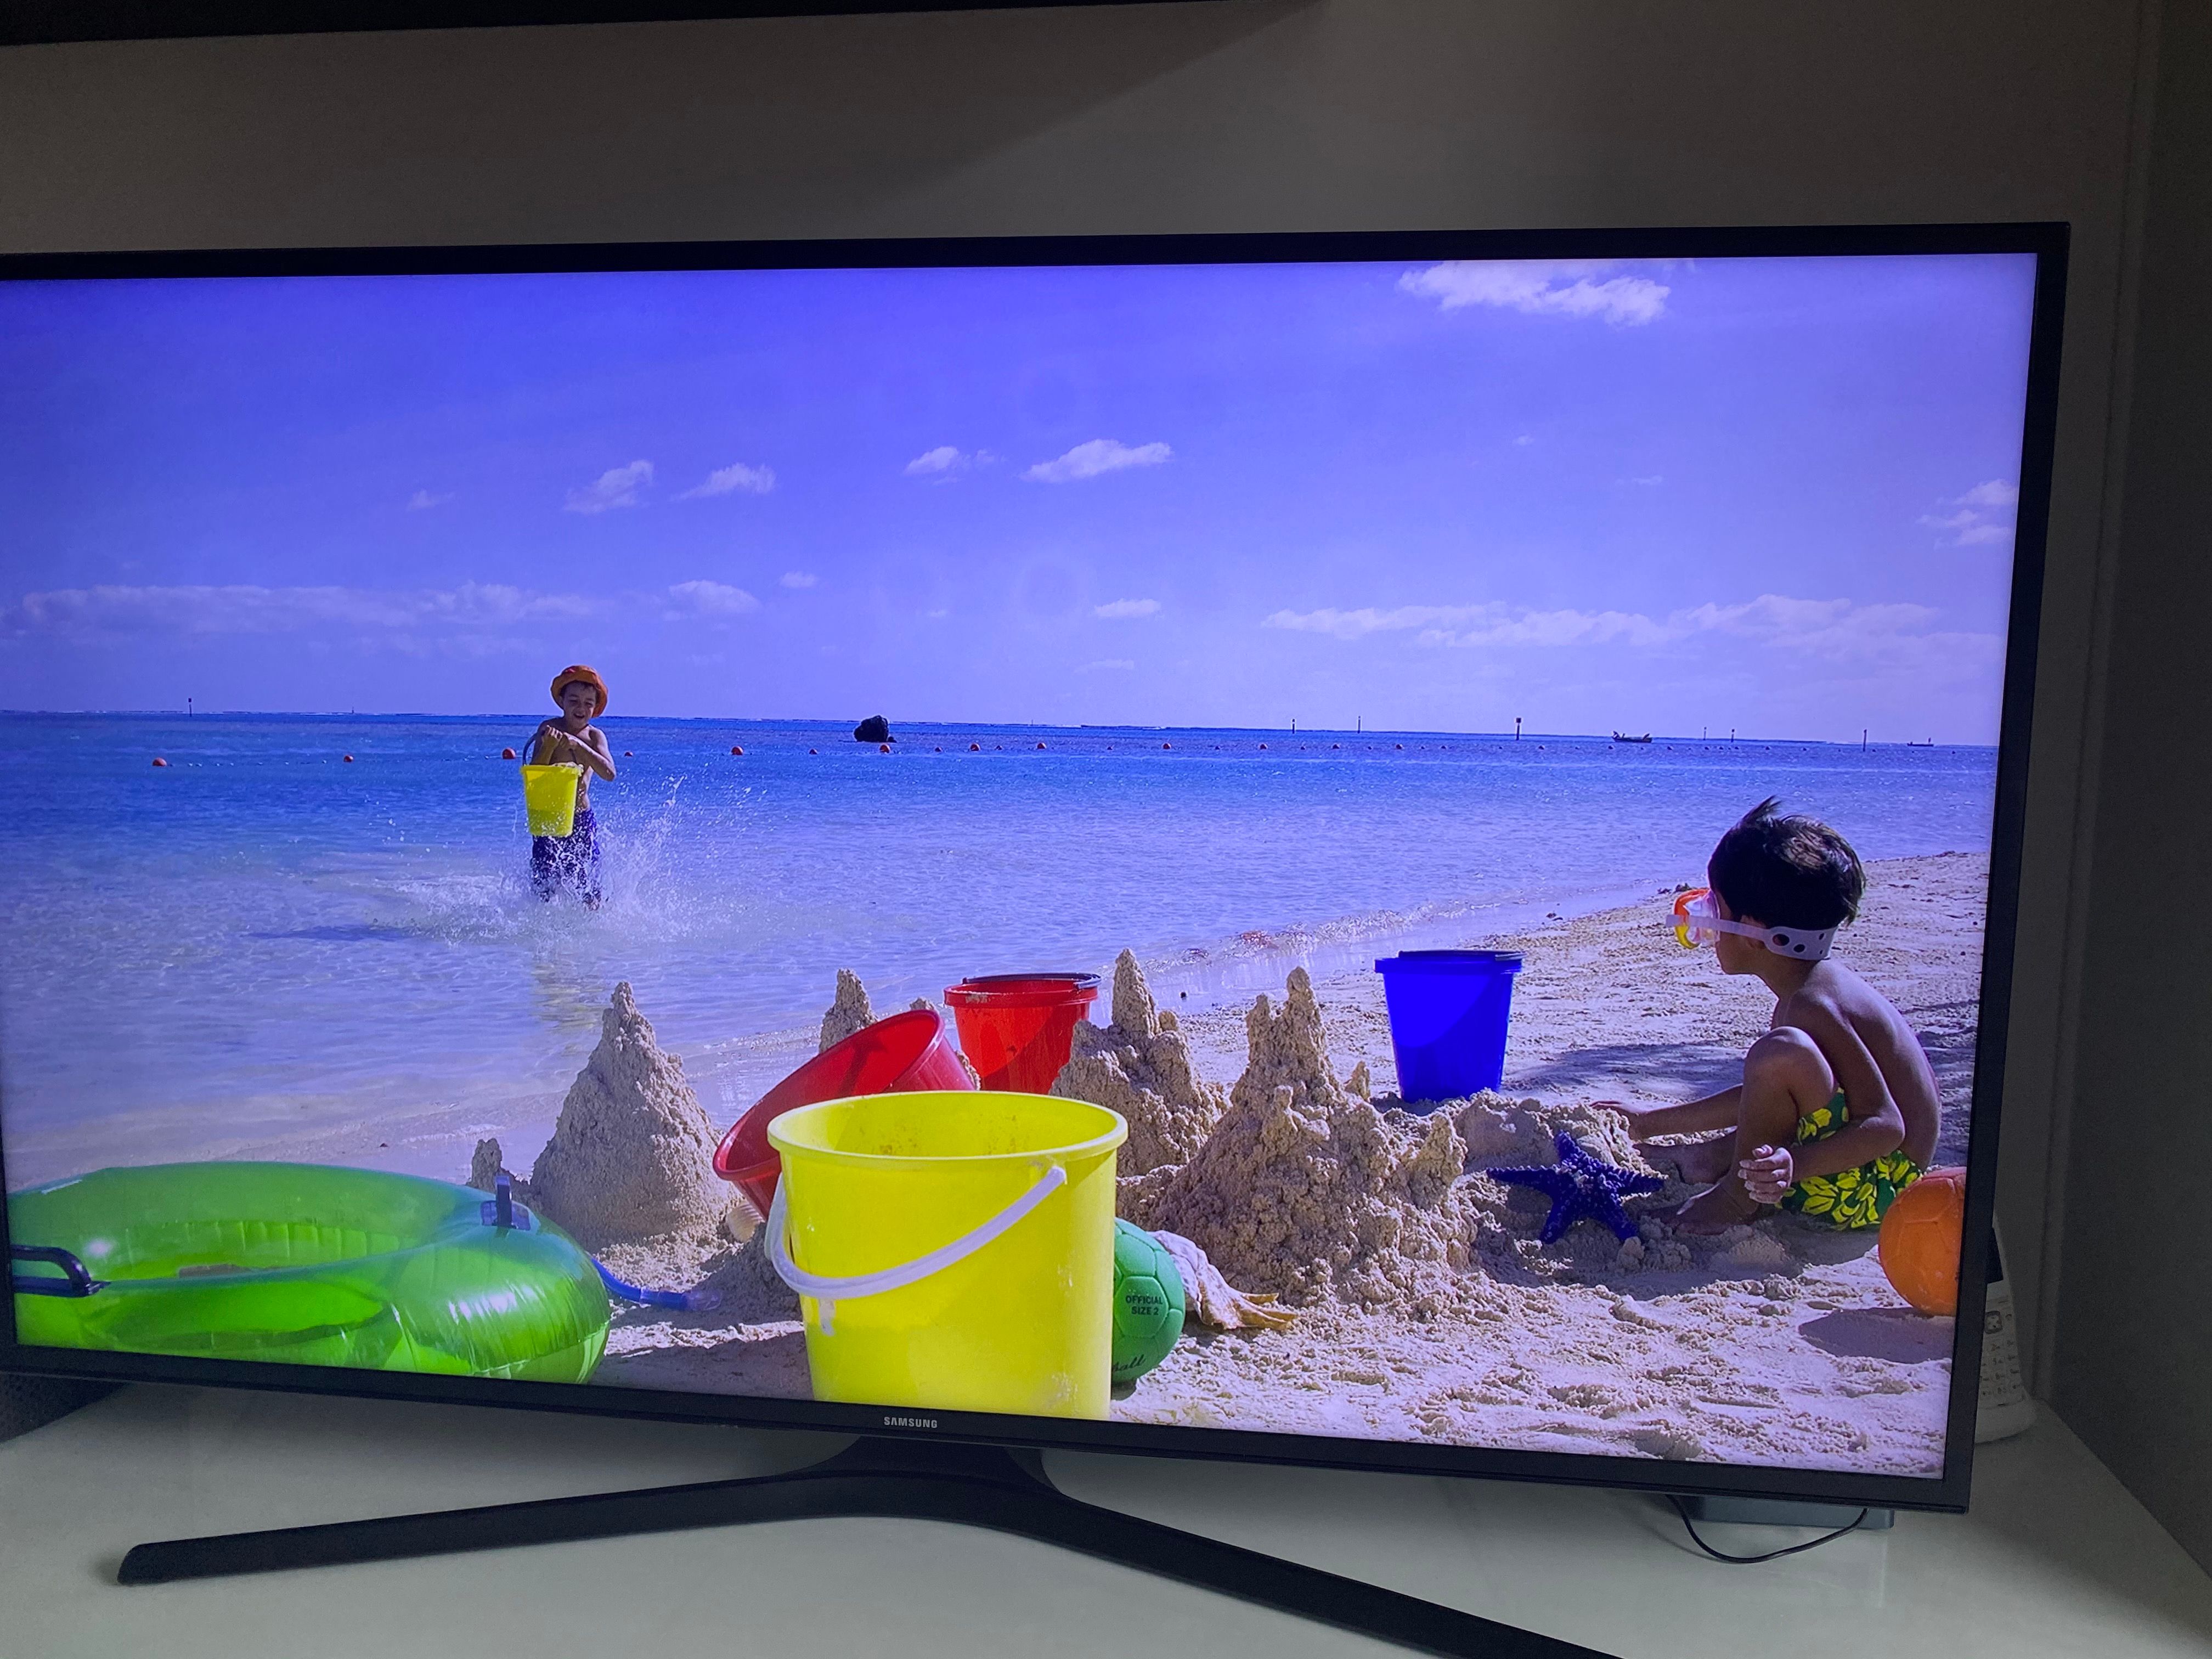 Solucionado: Mi smart tv tiene circulos de luz en la imagen - Samsung  Community